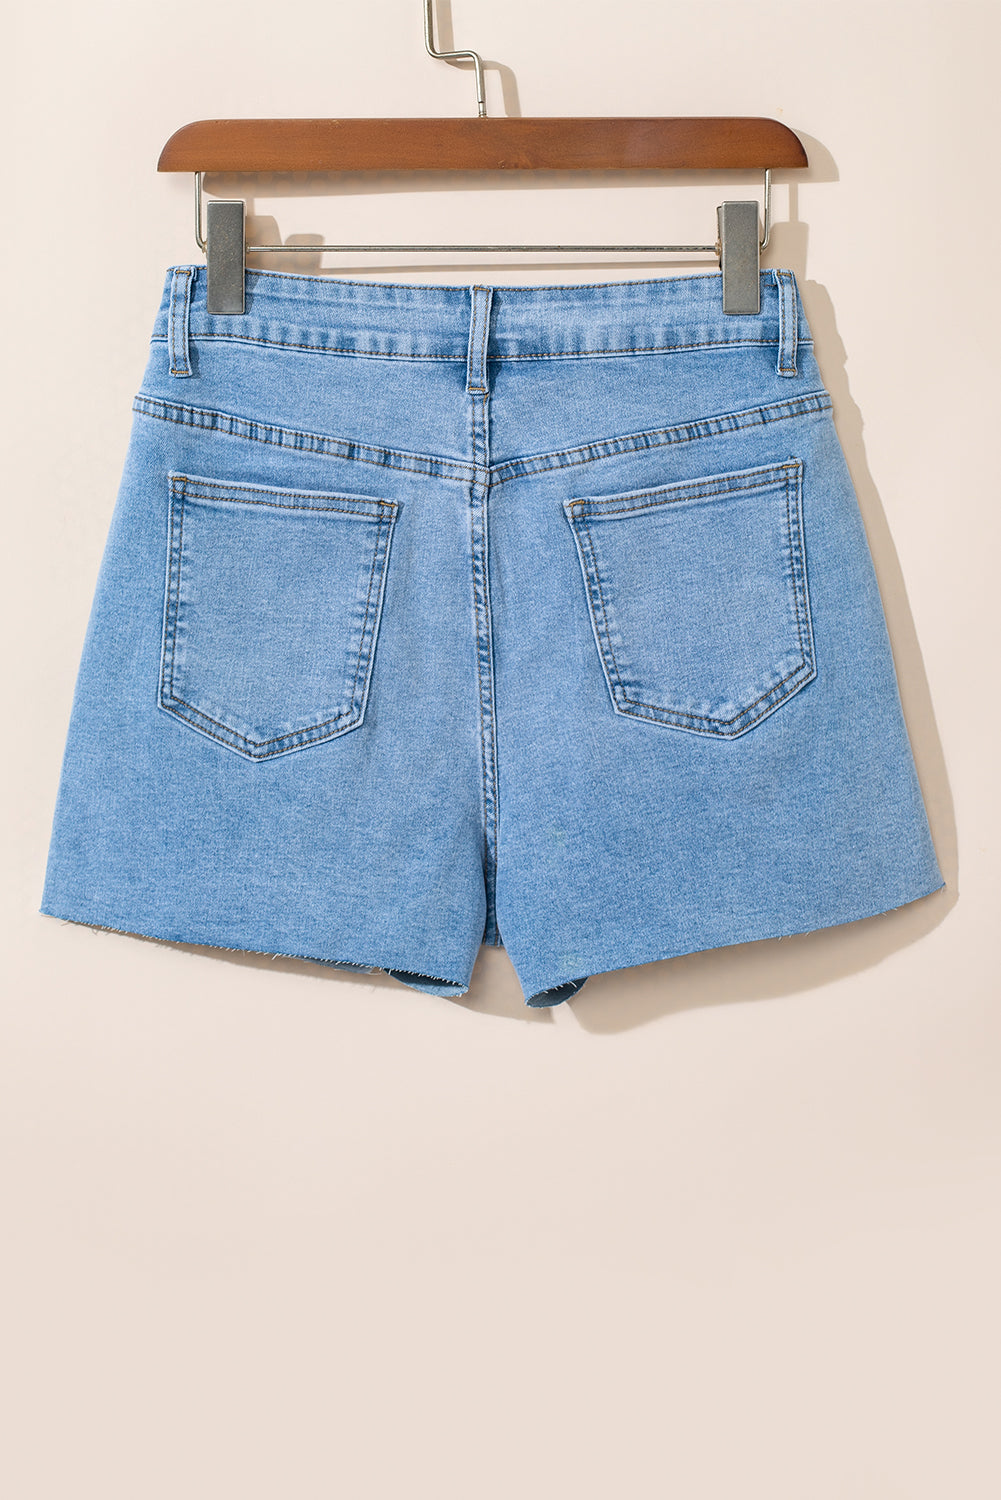 Sky Blue Stud Embellished High Waist Denim Shorts